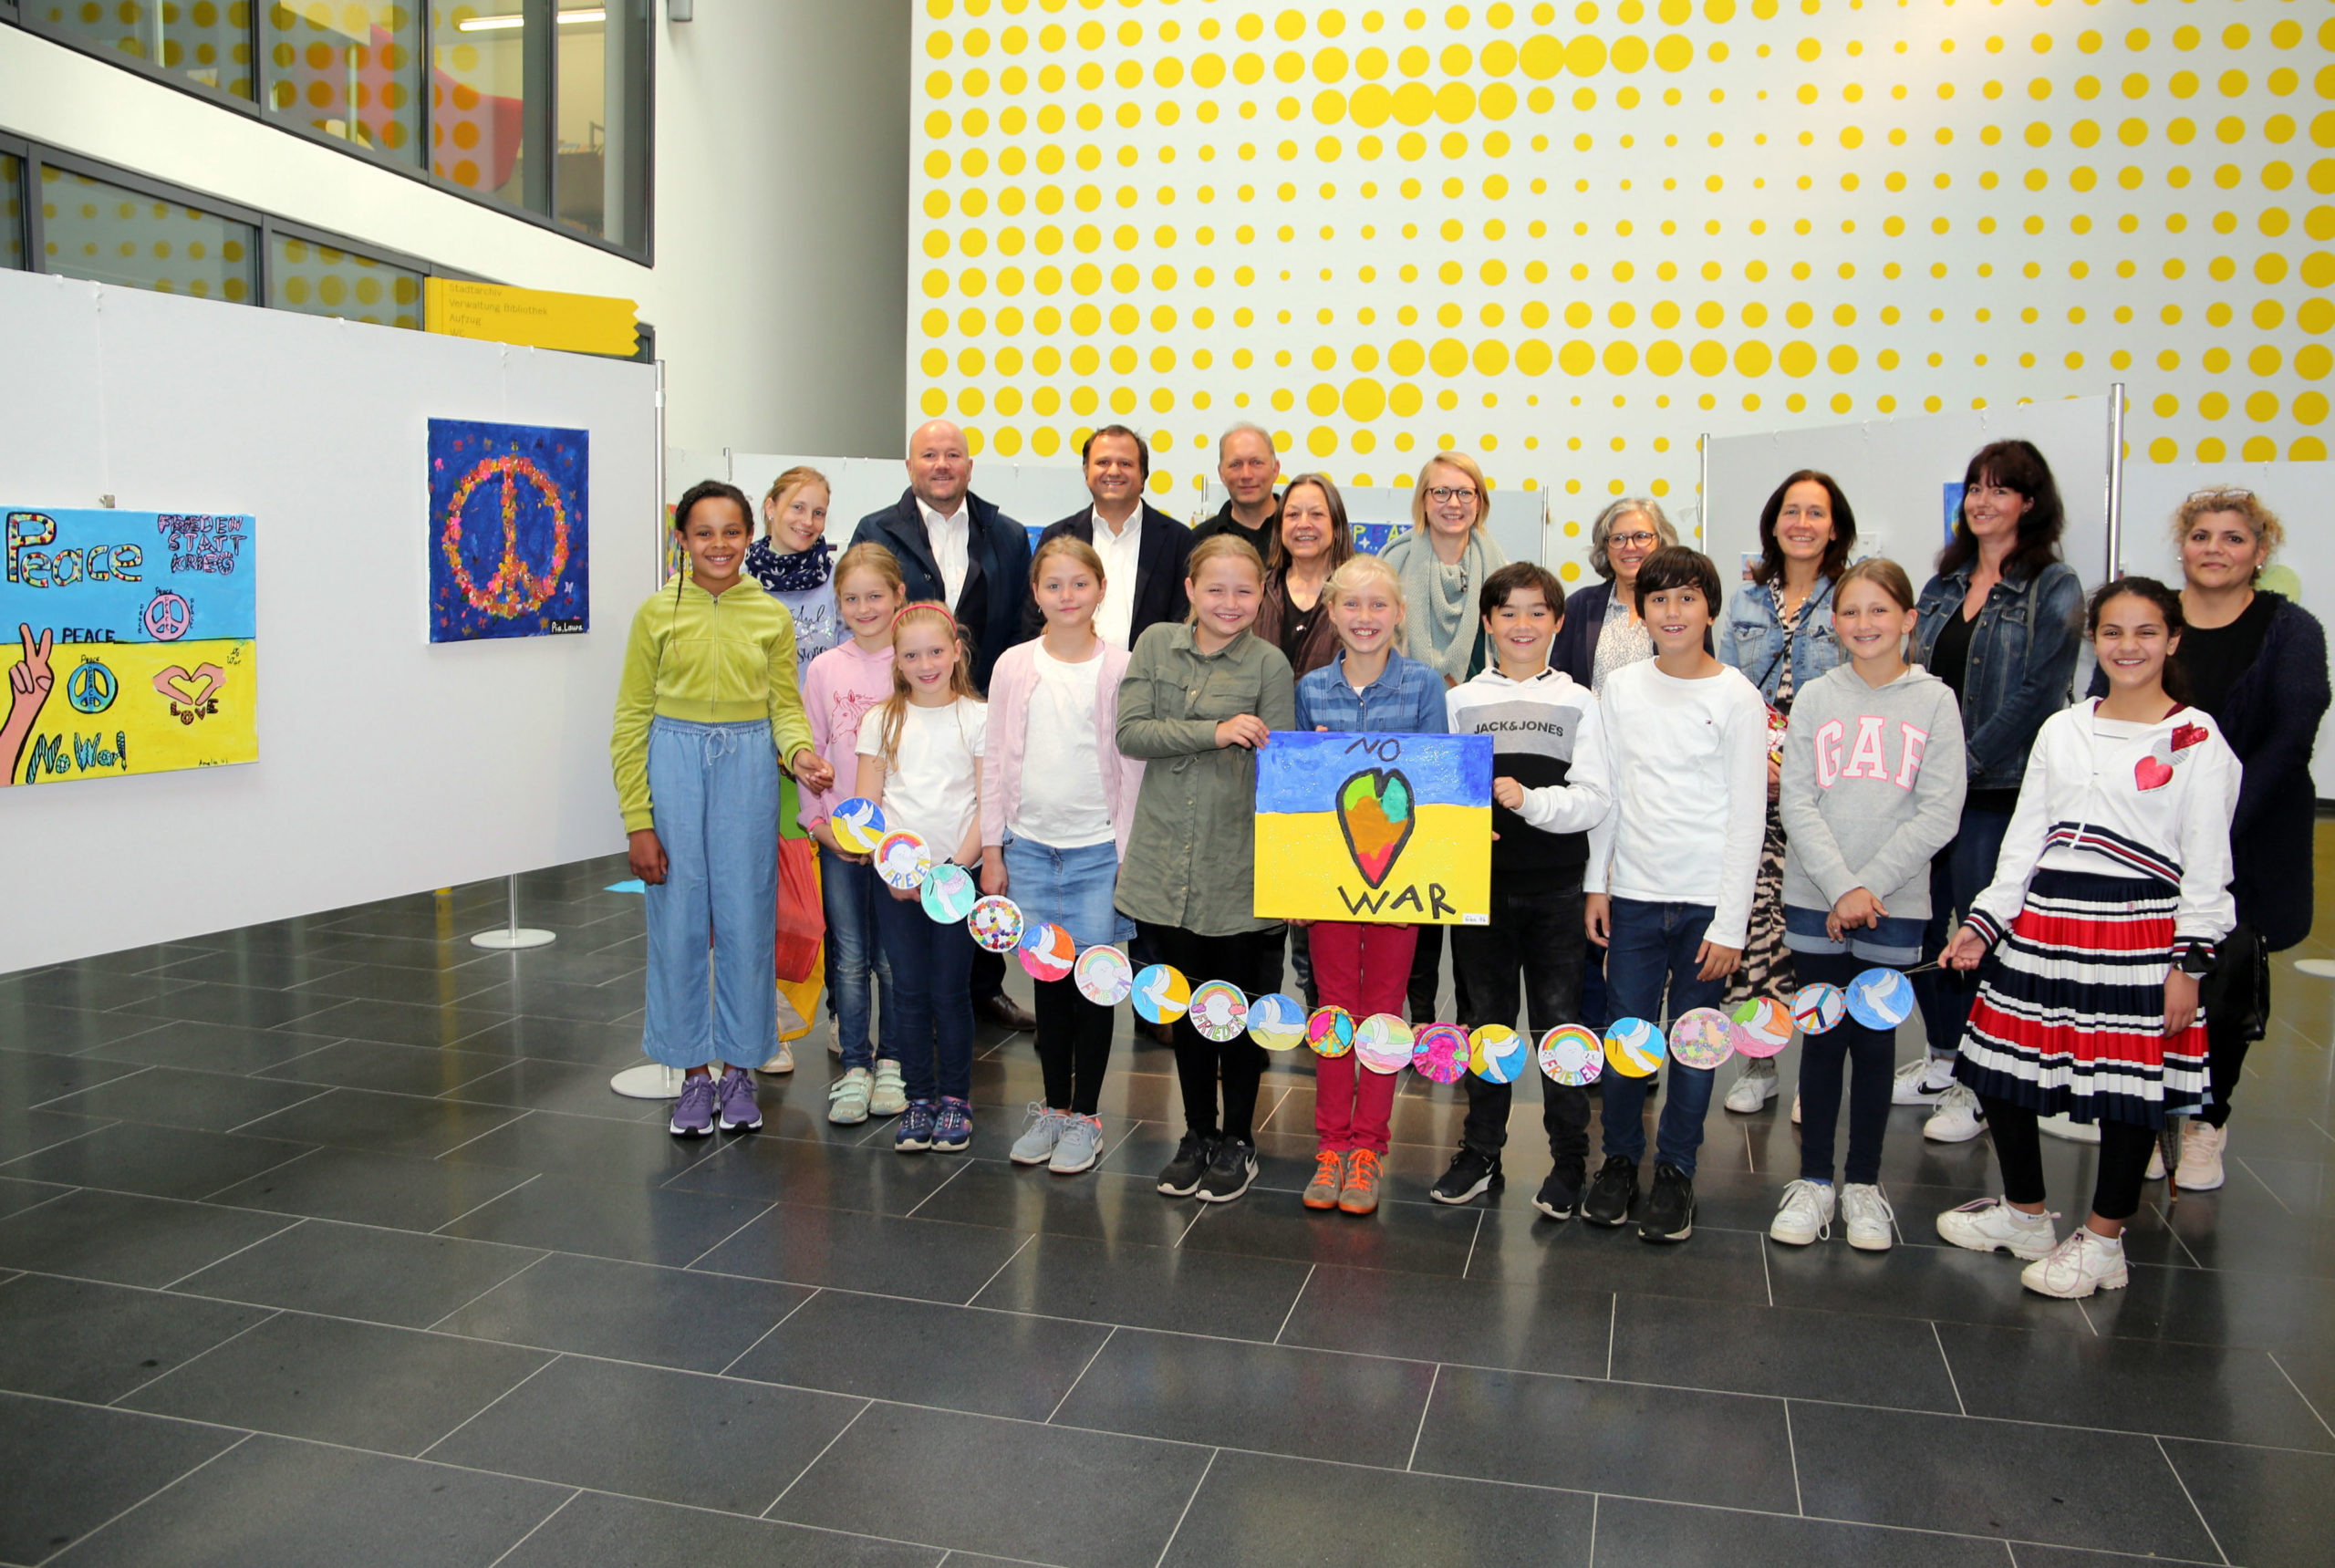 Grundschule Hülsdonk und Bibliothek setzen sich für Frieden ein